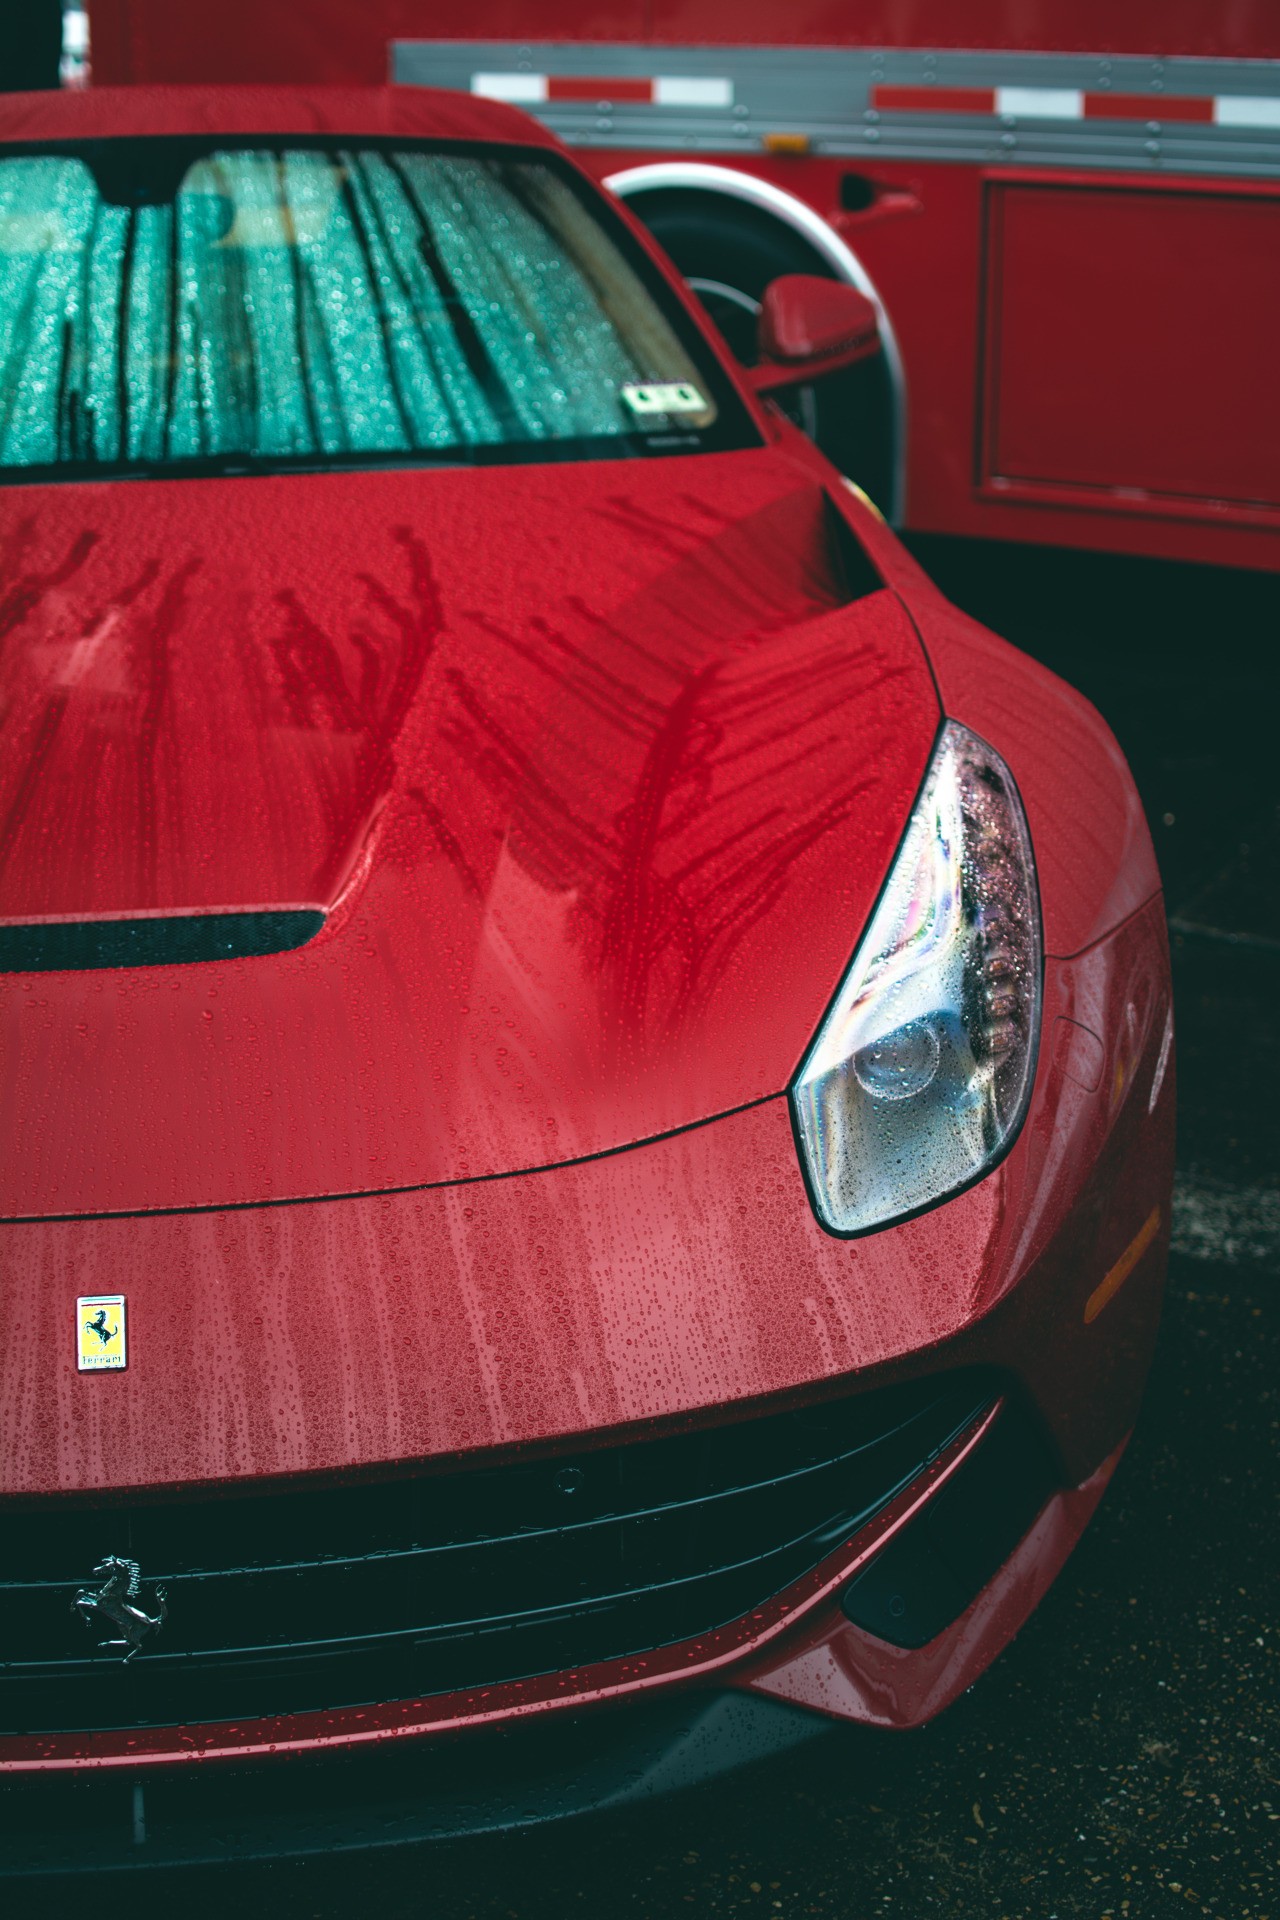 Rain Ferrari F12 Red Berlinetta - Ferrari F12 Wallpaper Phone - HD Wallpaper 